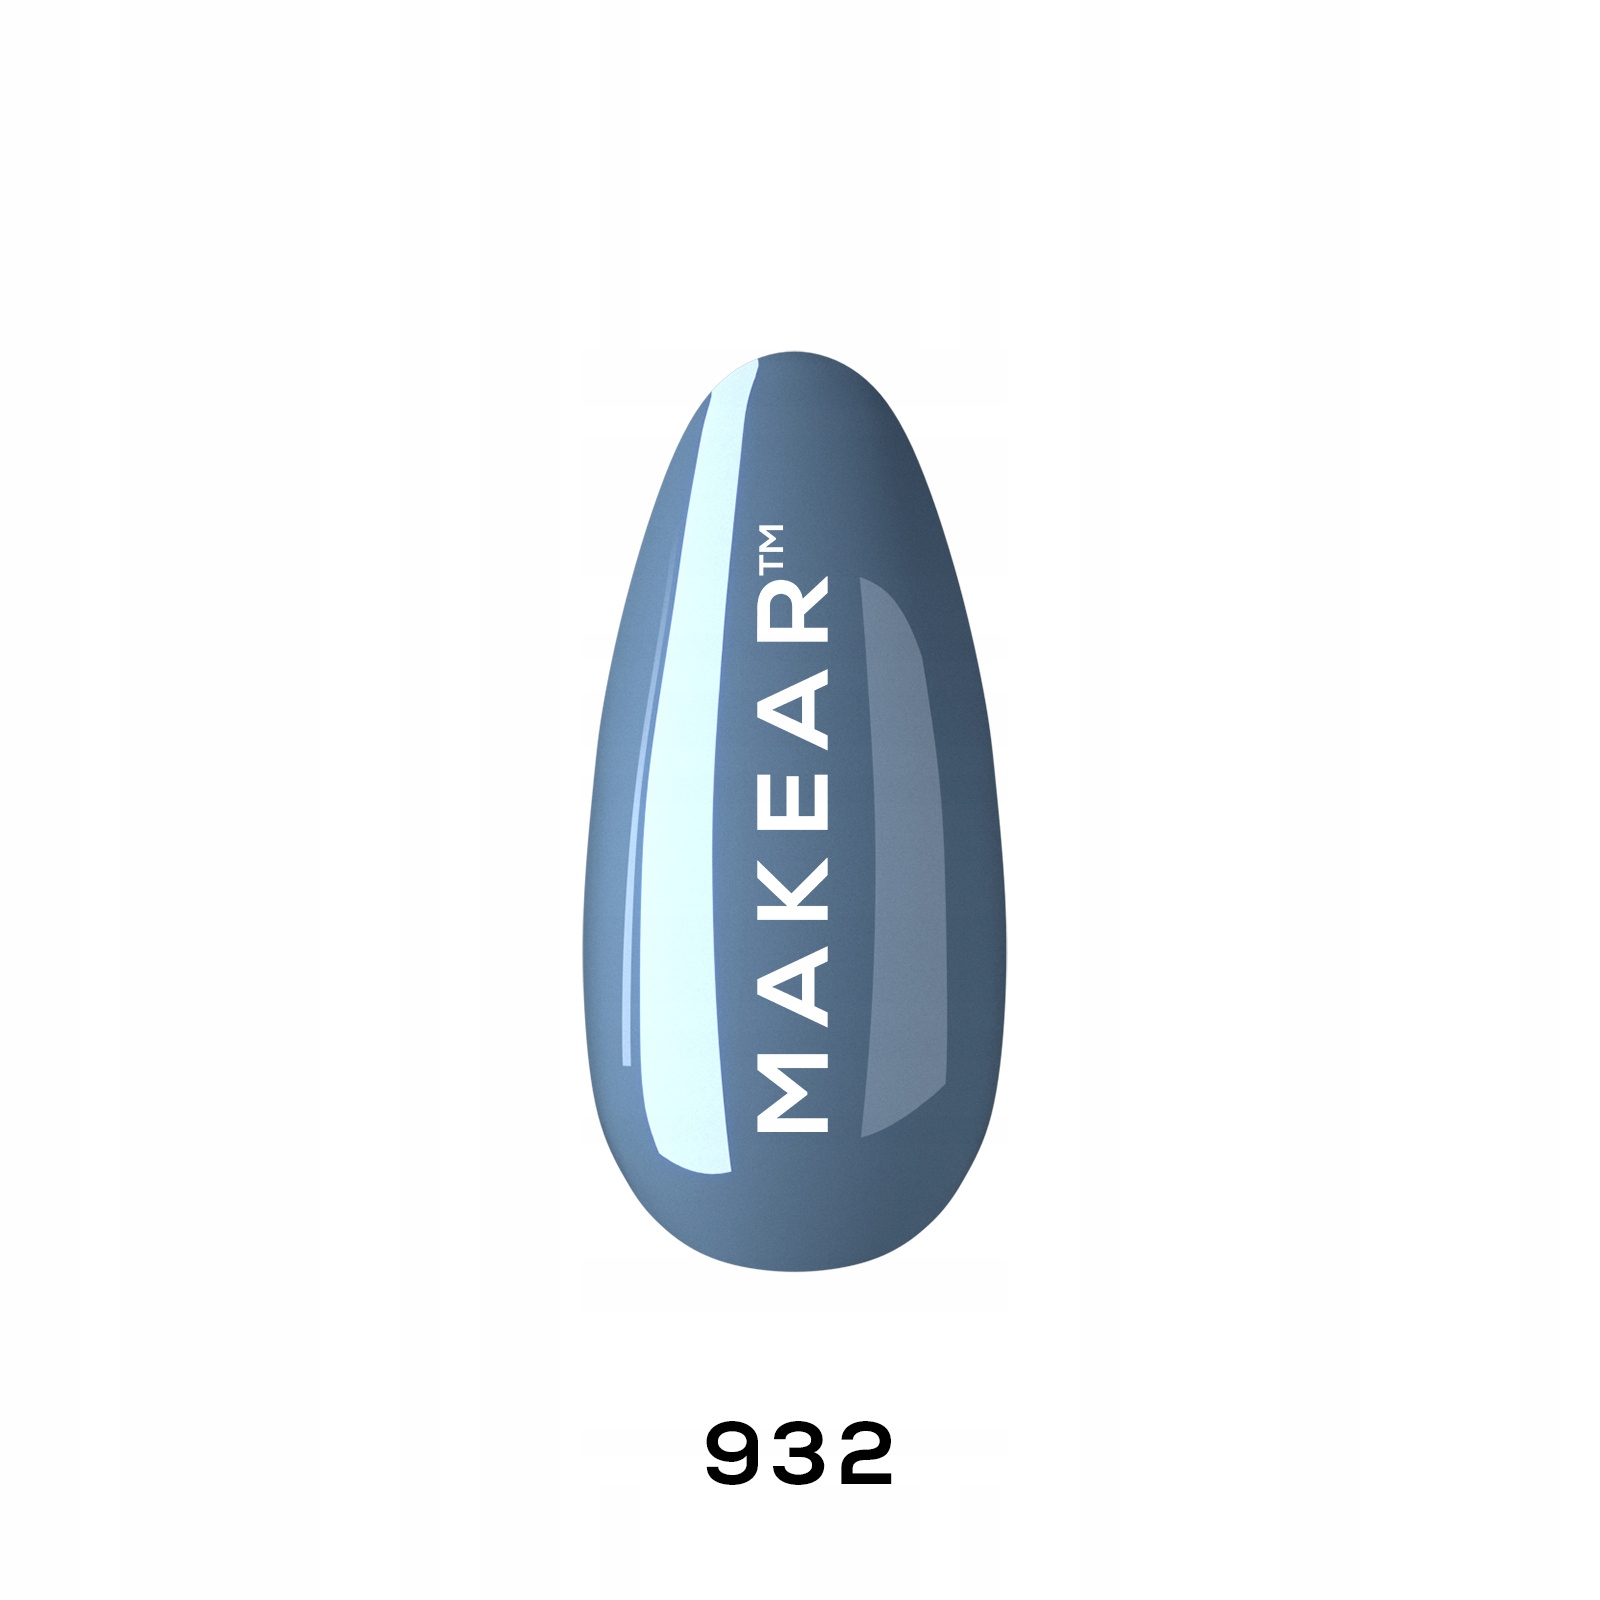 MAKEAR Lakier hybrydowy lakier kolorowy 932 8ml + GRATISY EAN (GTIN) 5907508489373